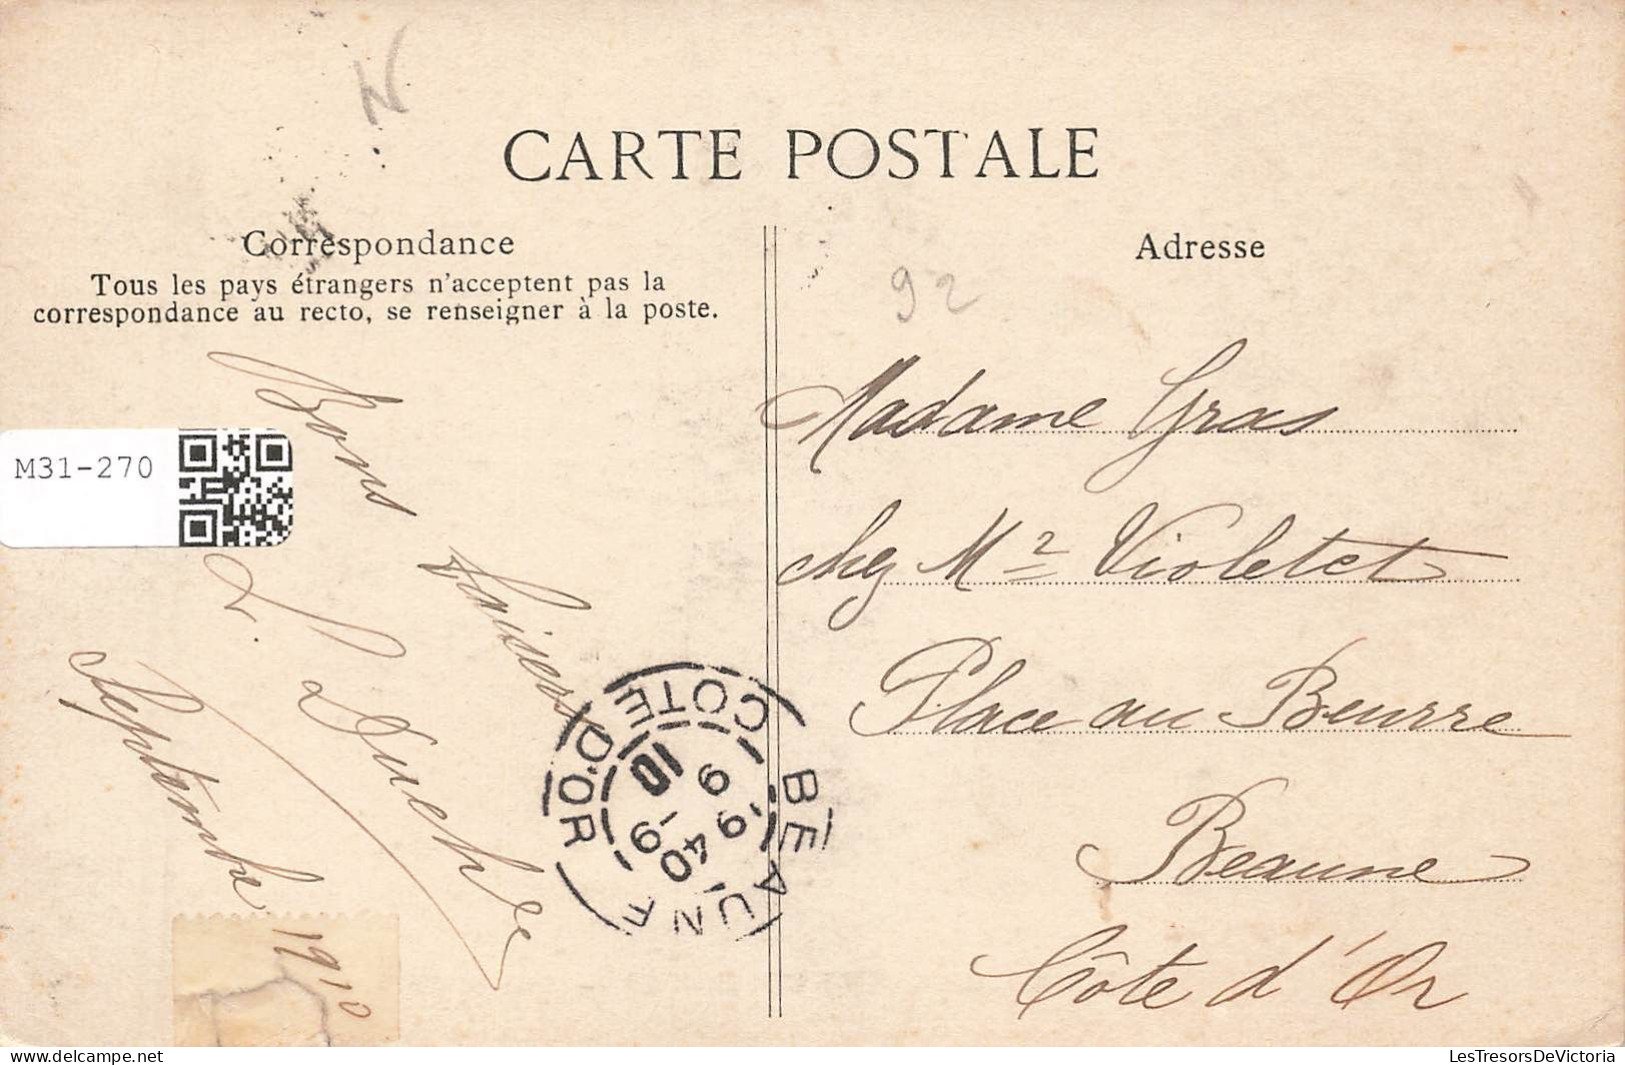 FRANCE - La Garenne Colombes - Avenue Des Vats - Carte Postale Ancienne - La Garenne Colombes